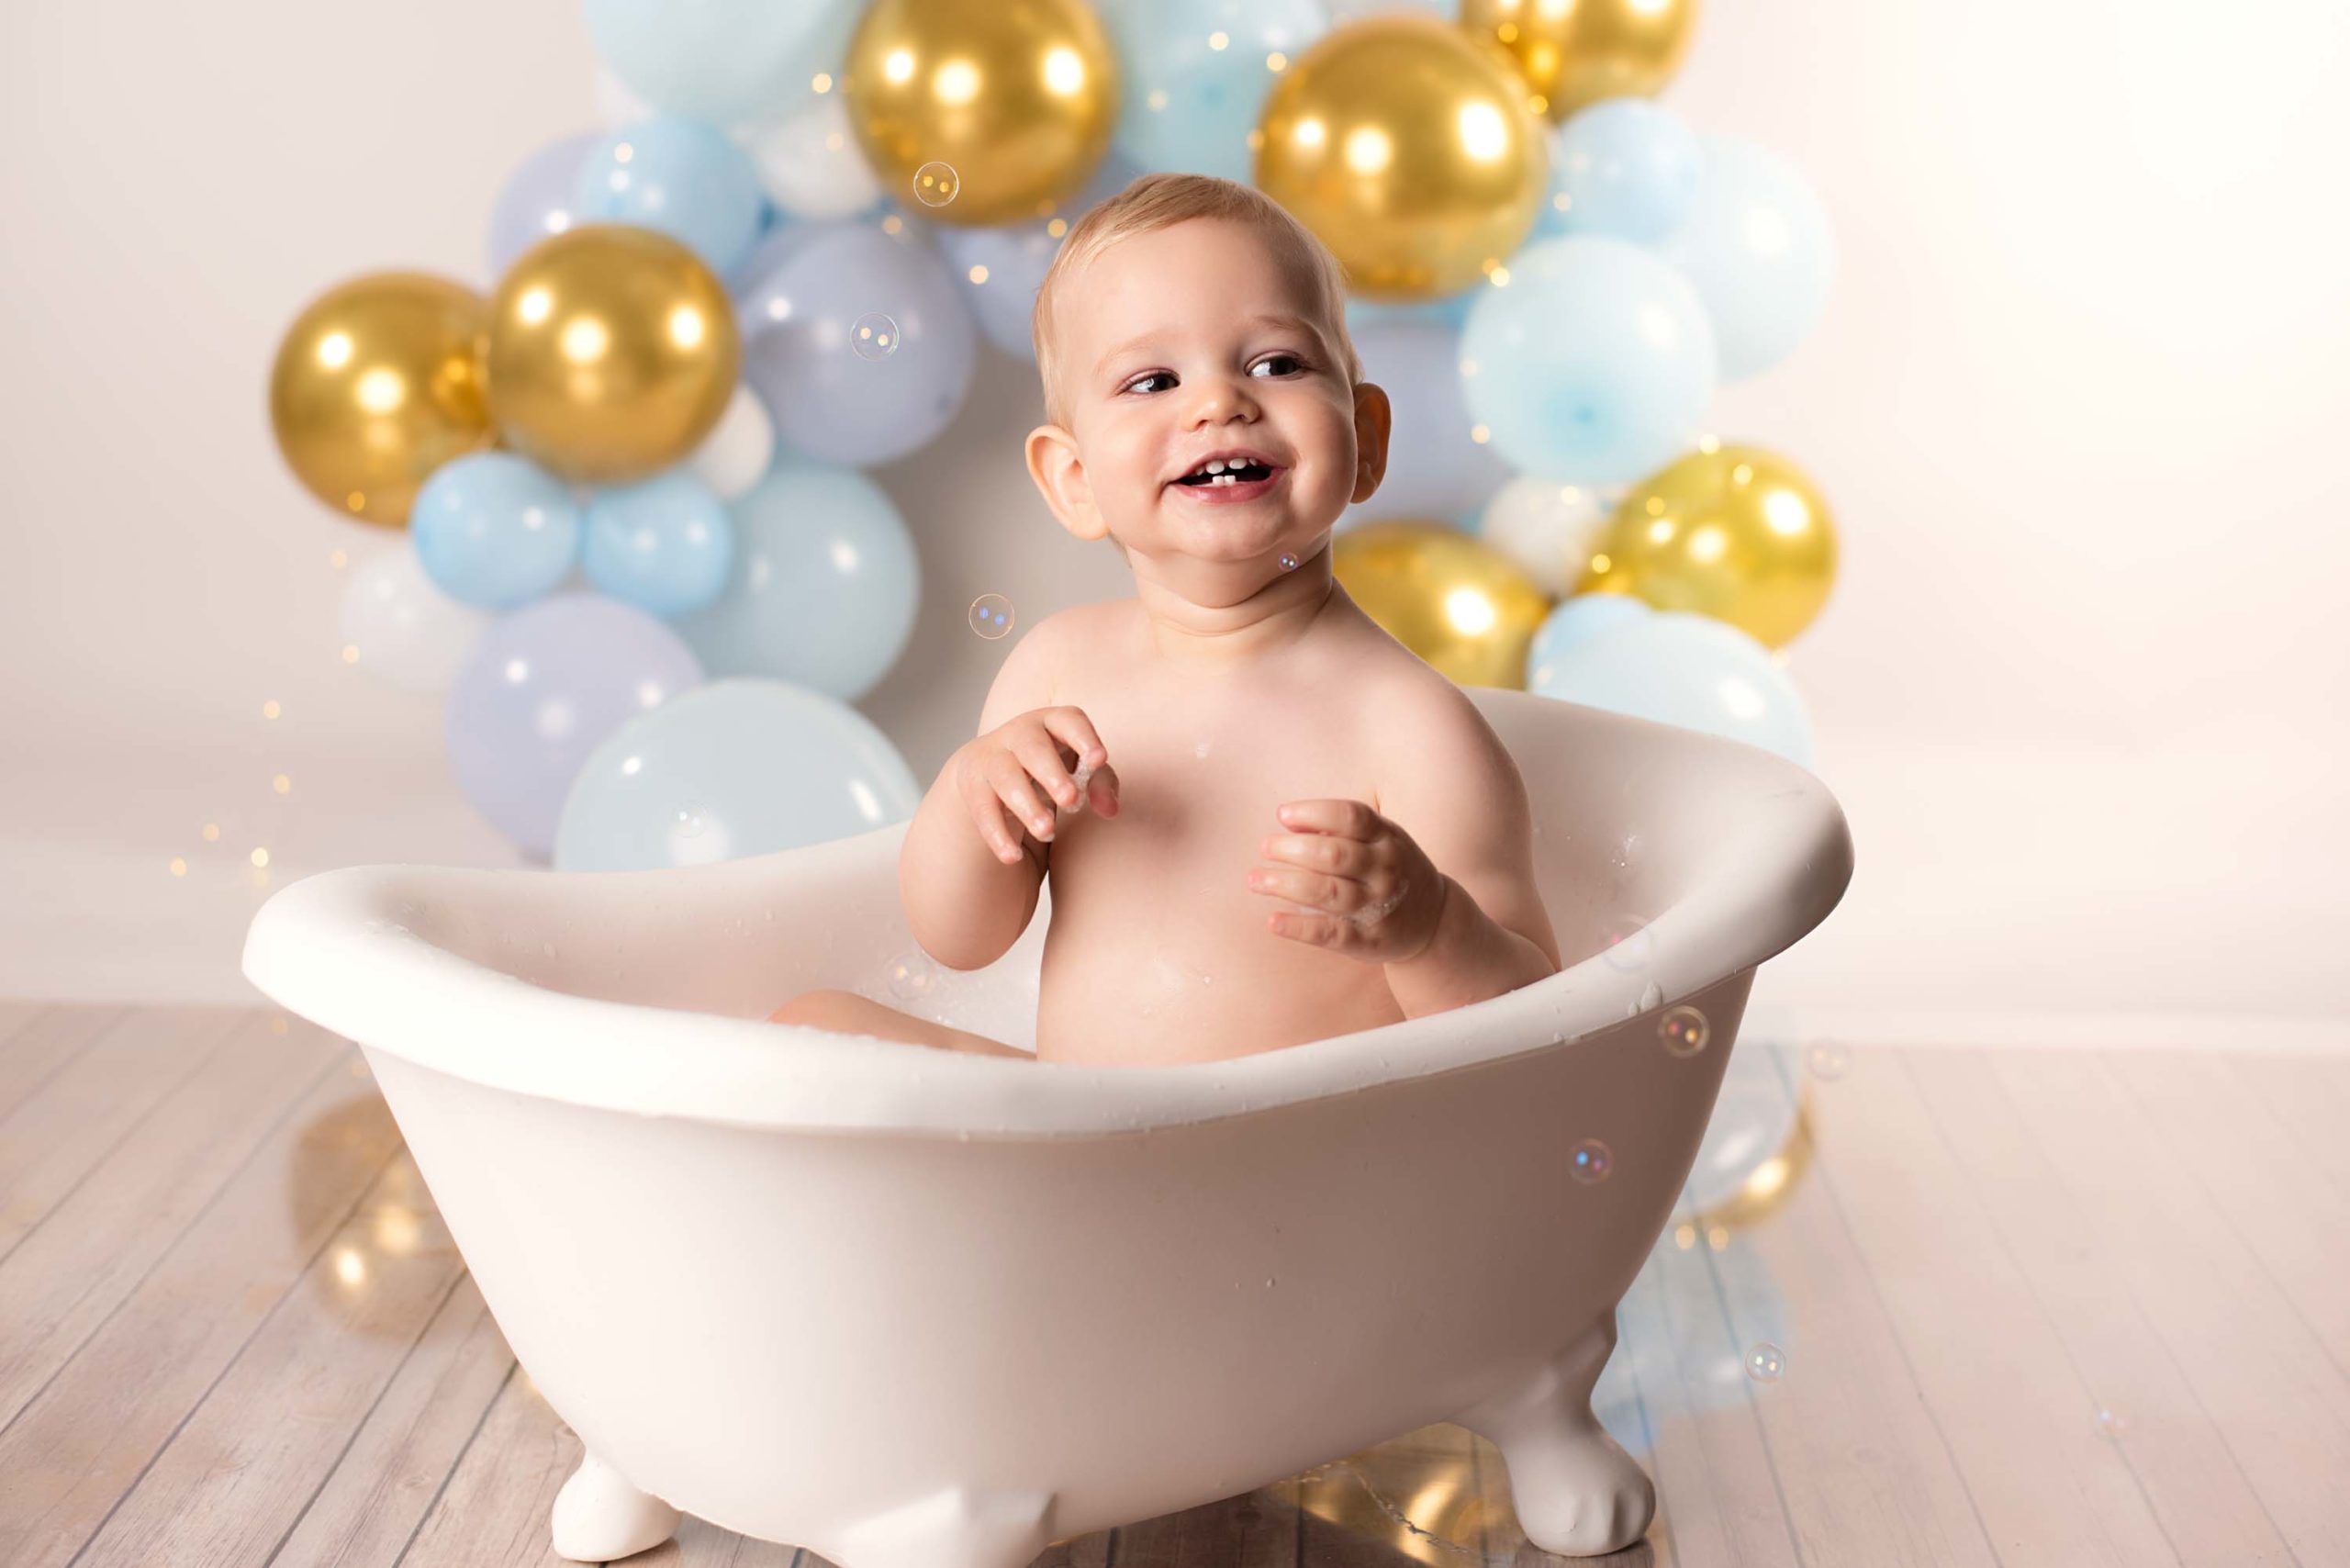 Little boy smiling in bath tub